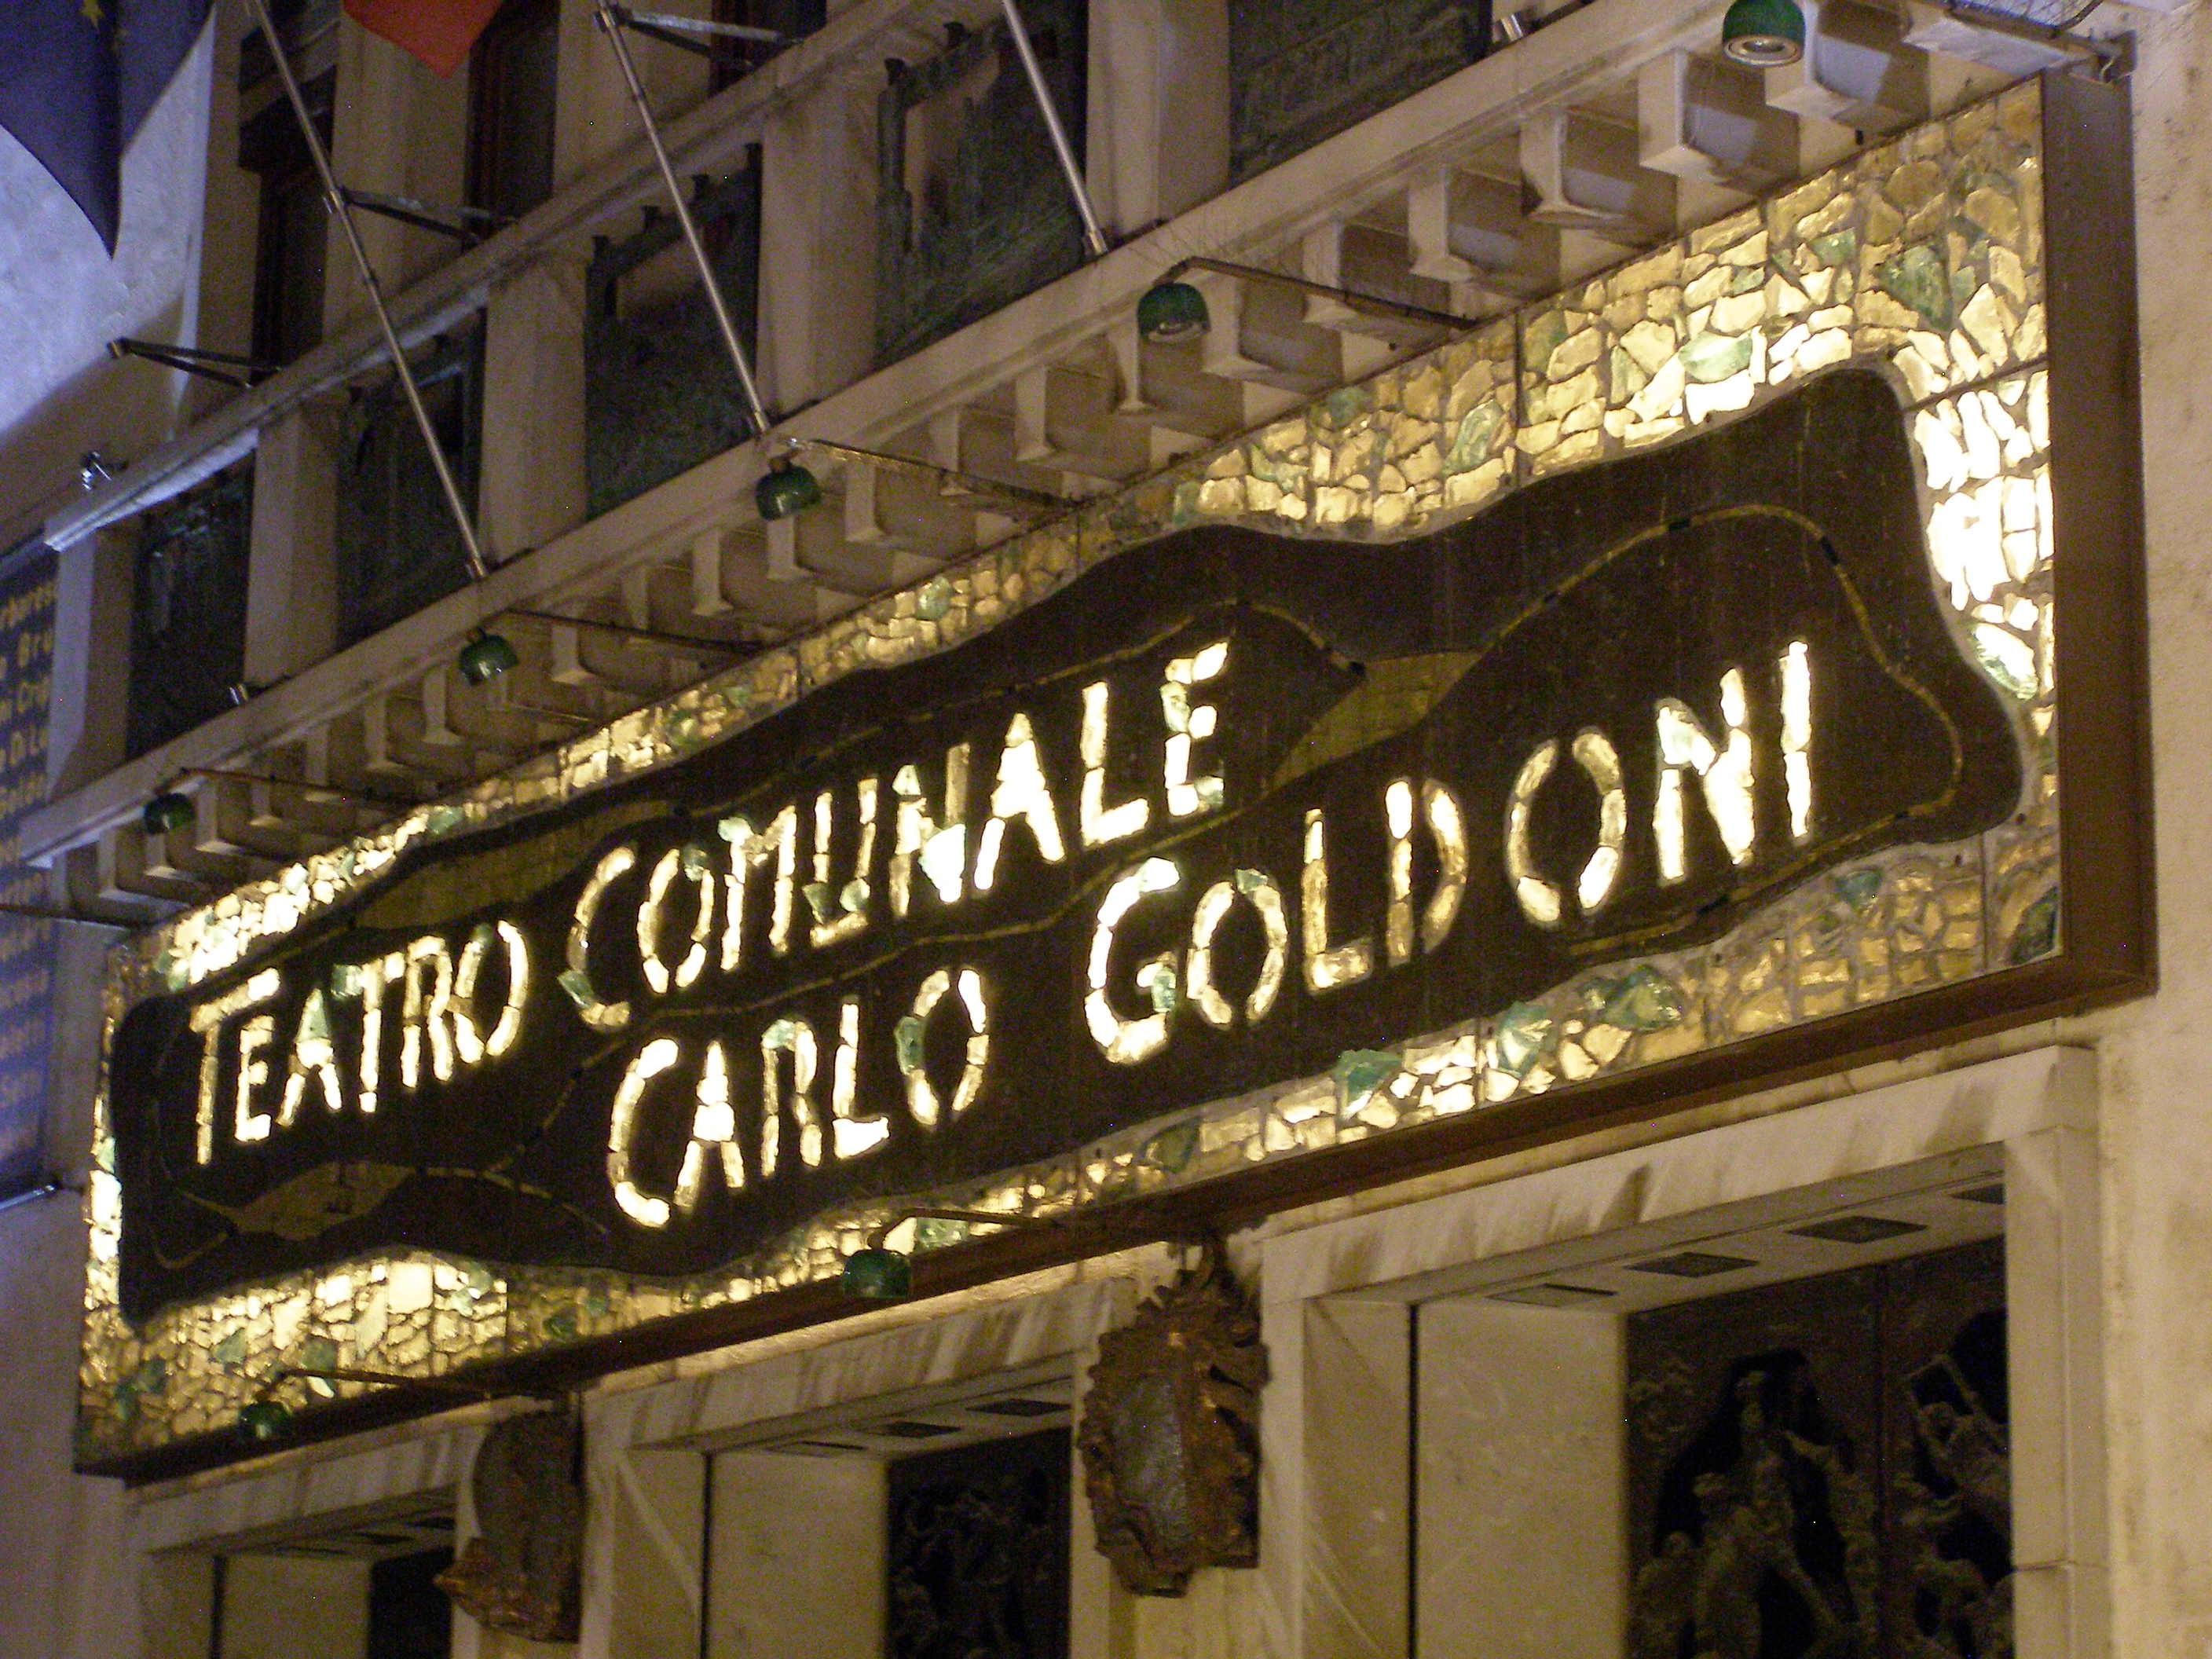 Particolare della facciata con la scritta Teatro comunale Carlo Goldoni